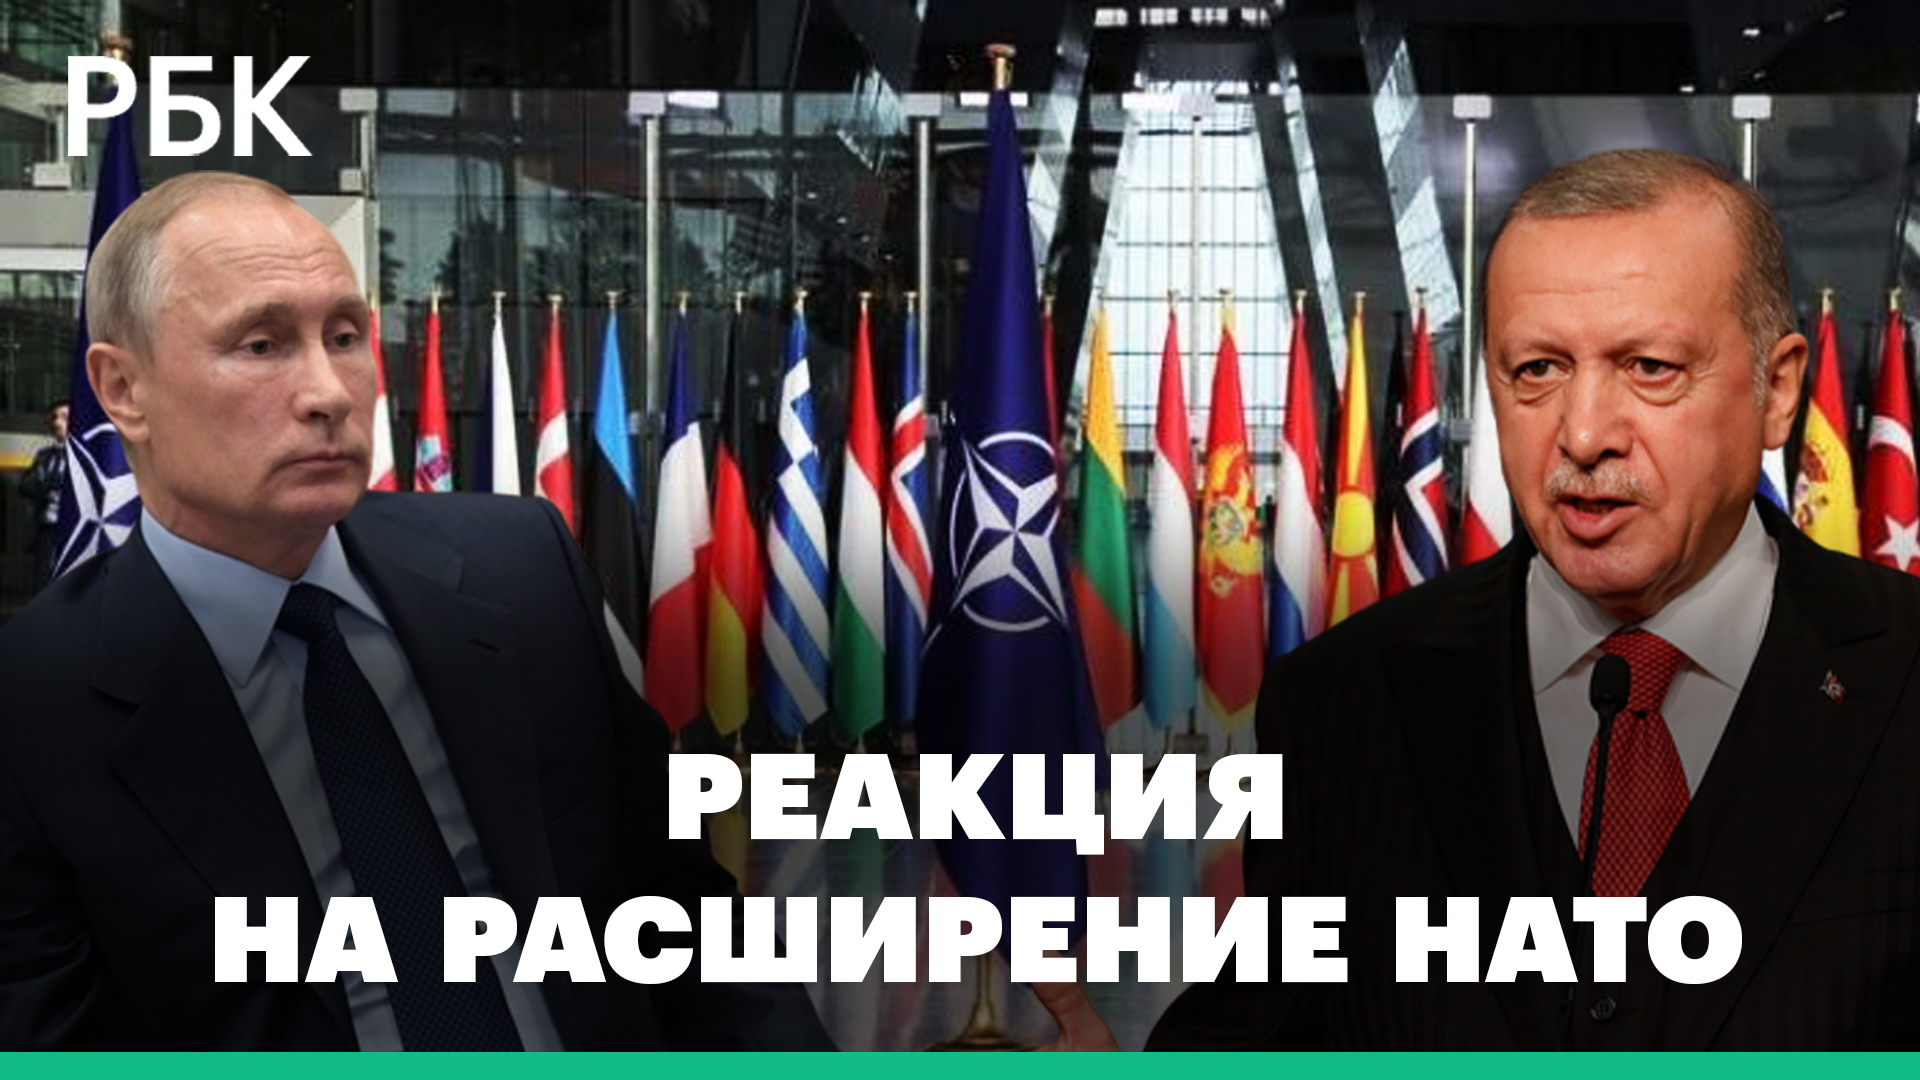 Финляндия и Швеция вступают в НАТО. Реакция ЕС, Турции и России на расширение альянса